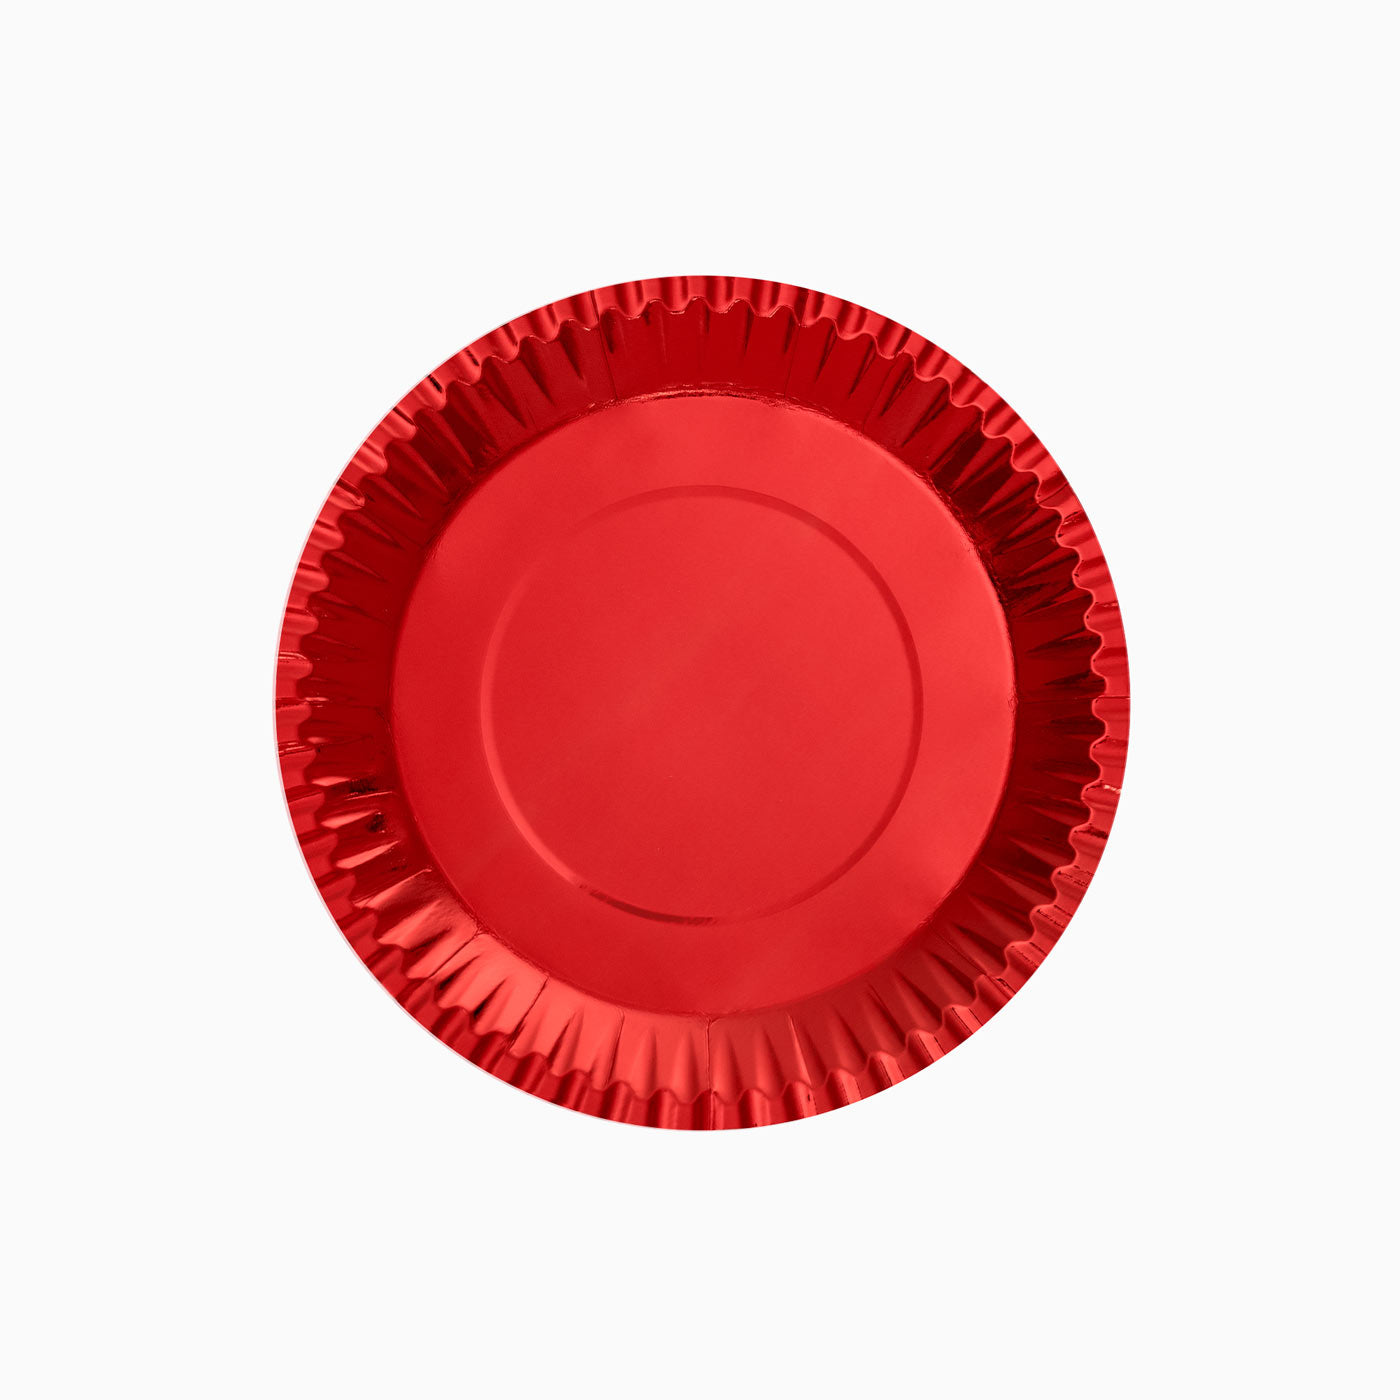 Cartone metallico piatto piatto Ø 18 cm rosso